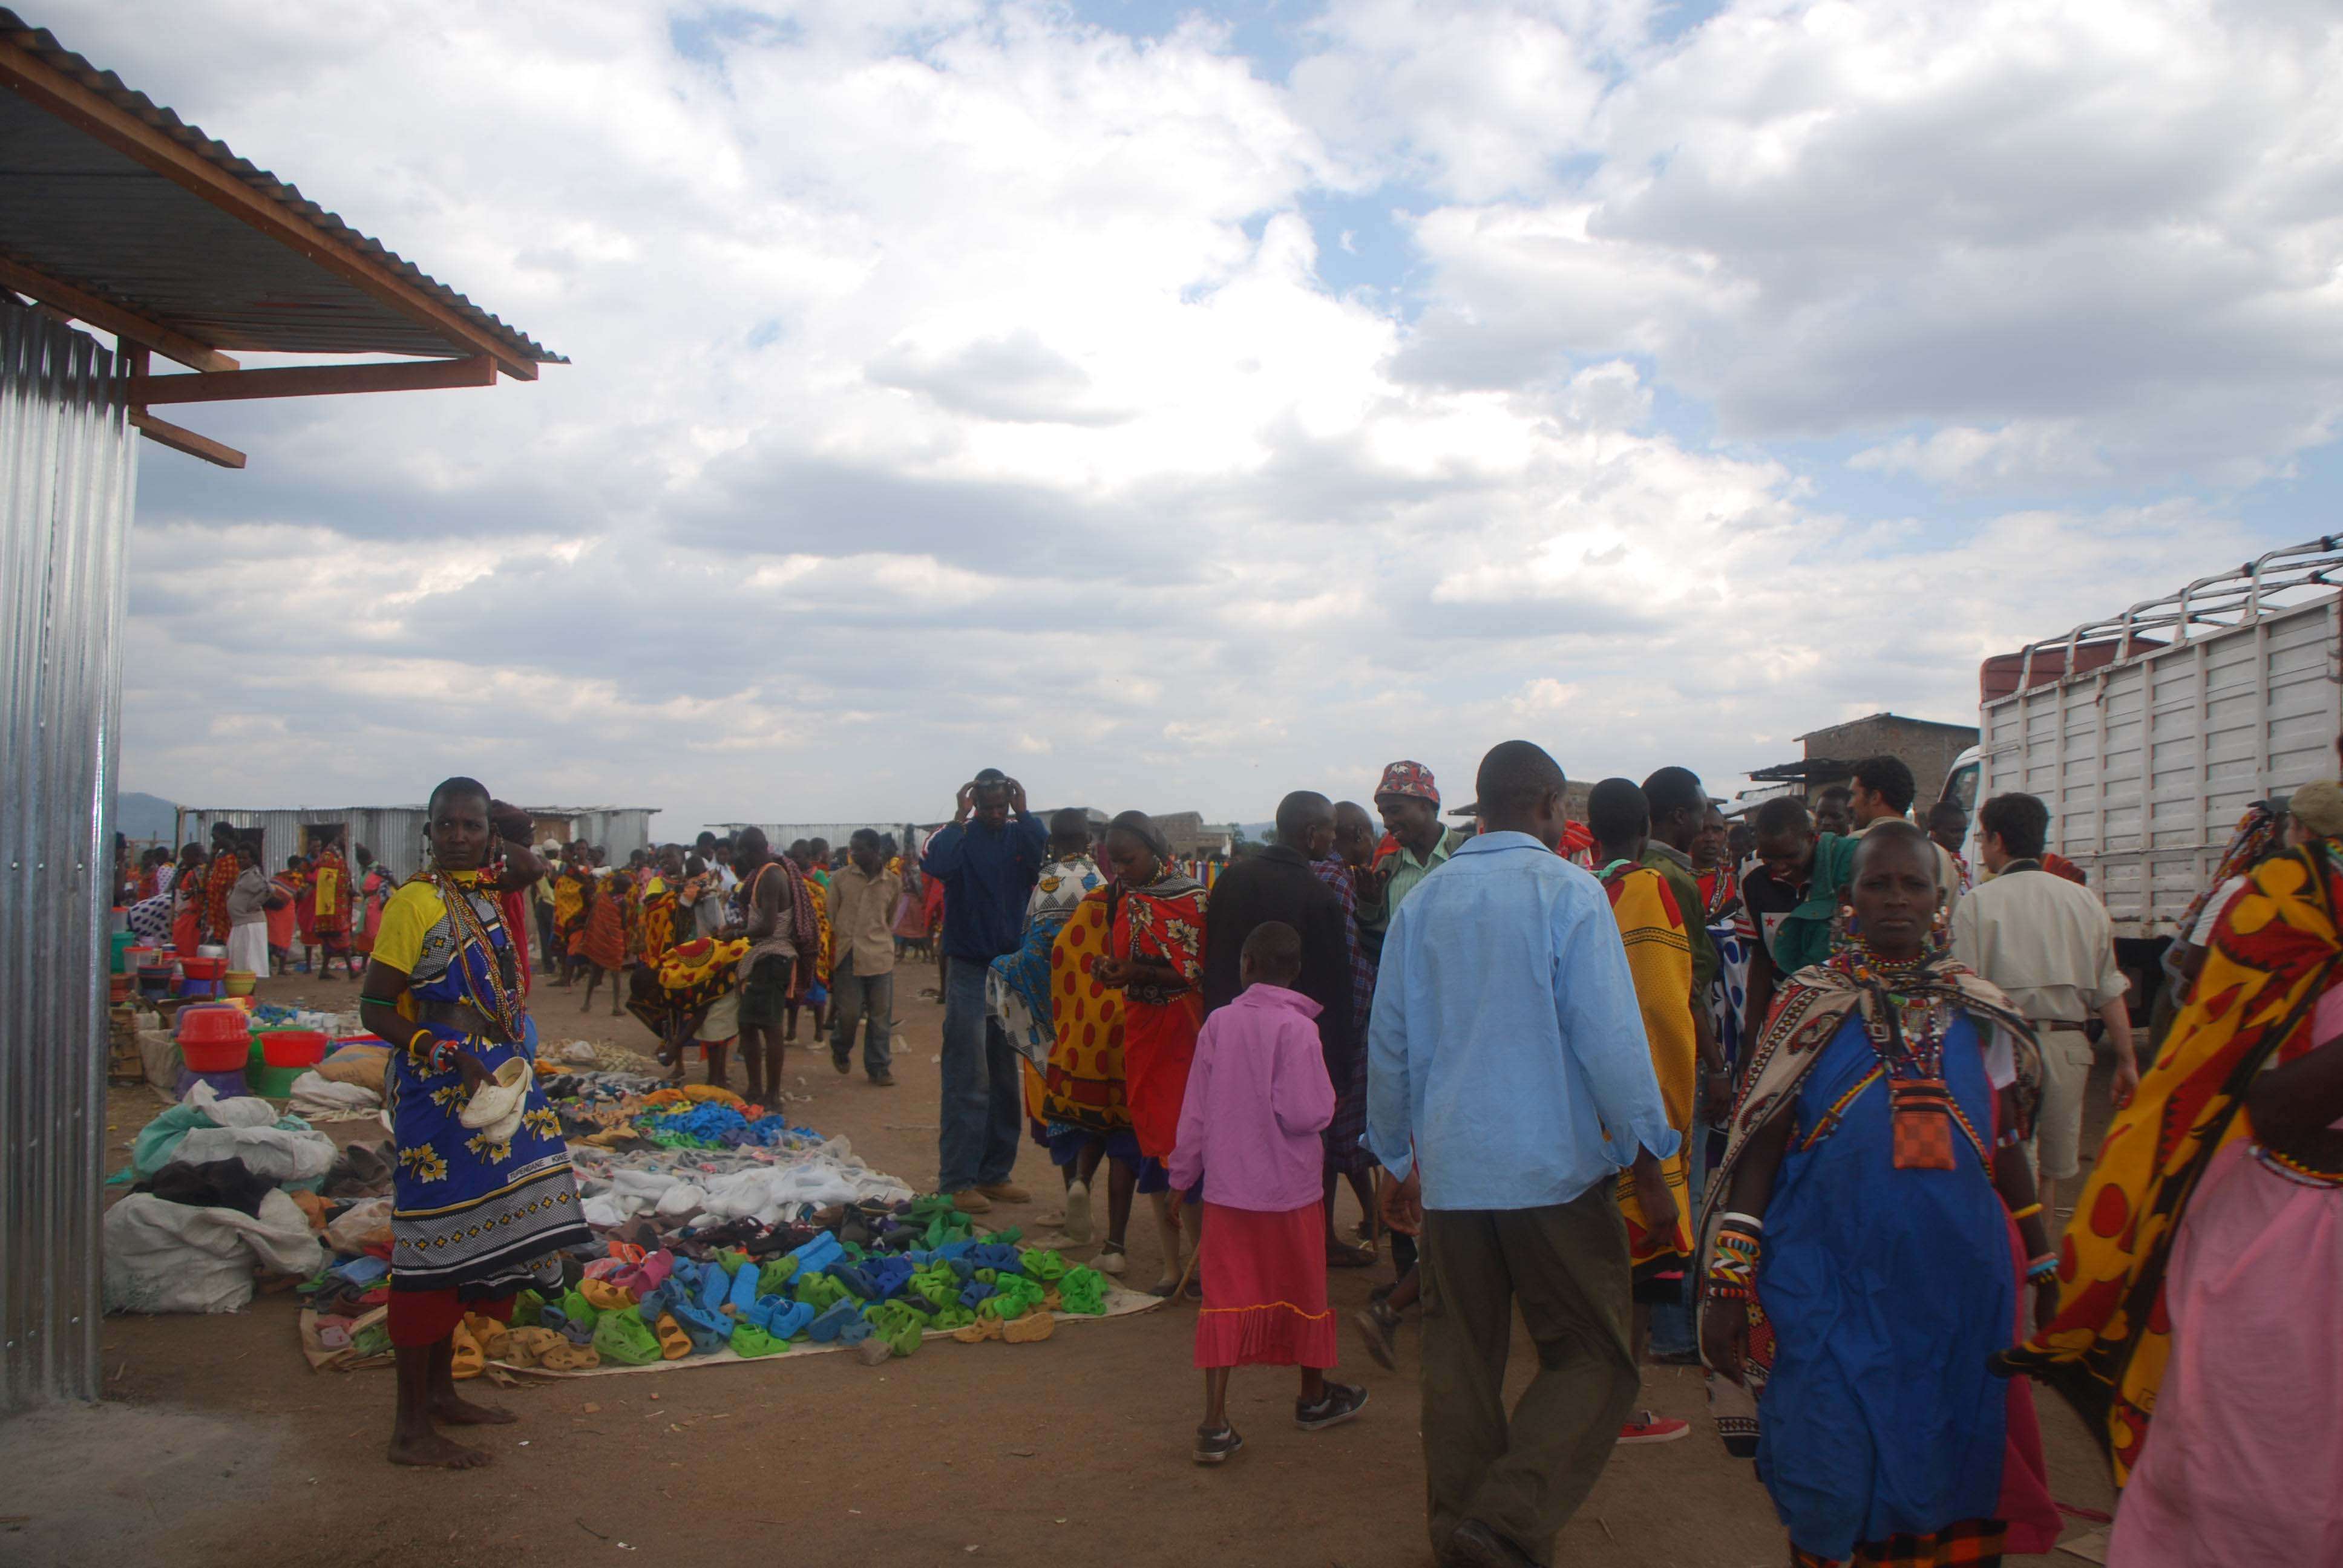 Regreso al Mara - Kenia - Blogs de Kenia - El mercado masai, un intento fallido de ver el cruce y algunas mariposas (20)